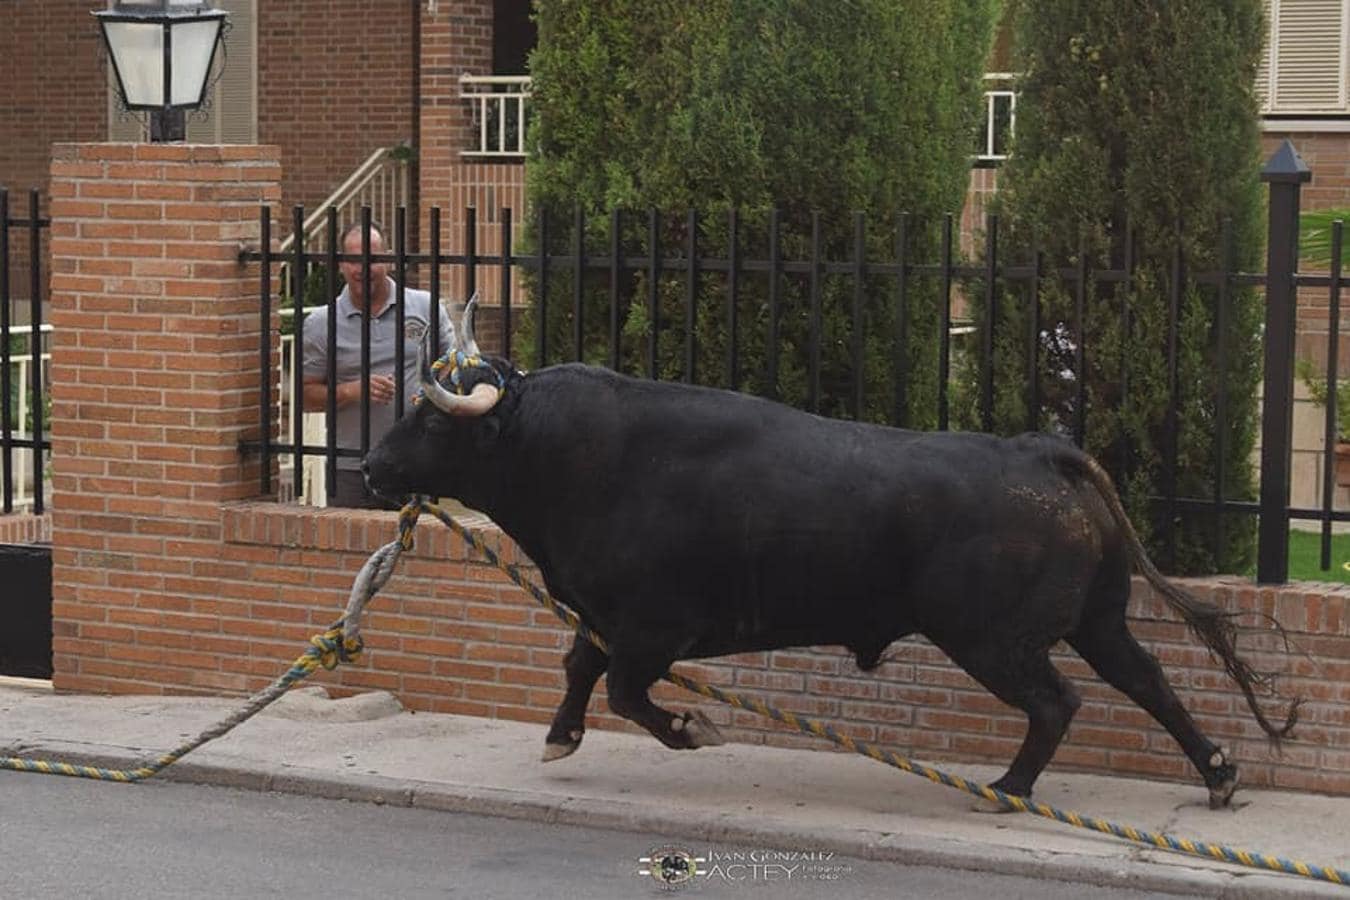 Las imágenes del toro enmaromado de Yuncos